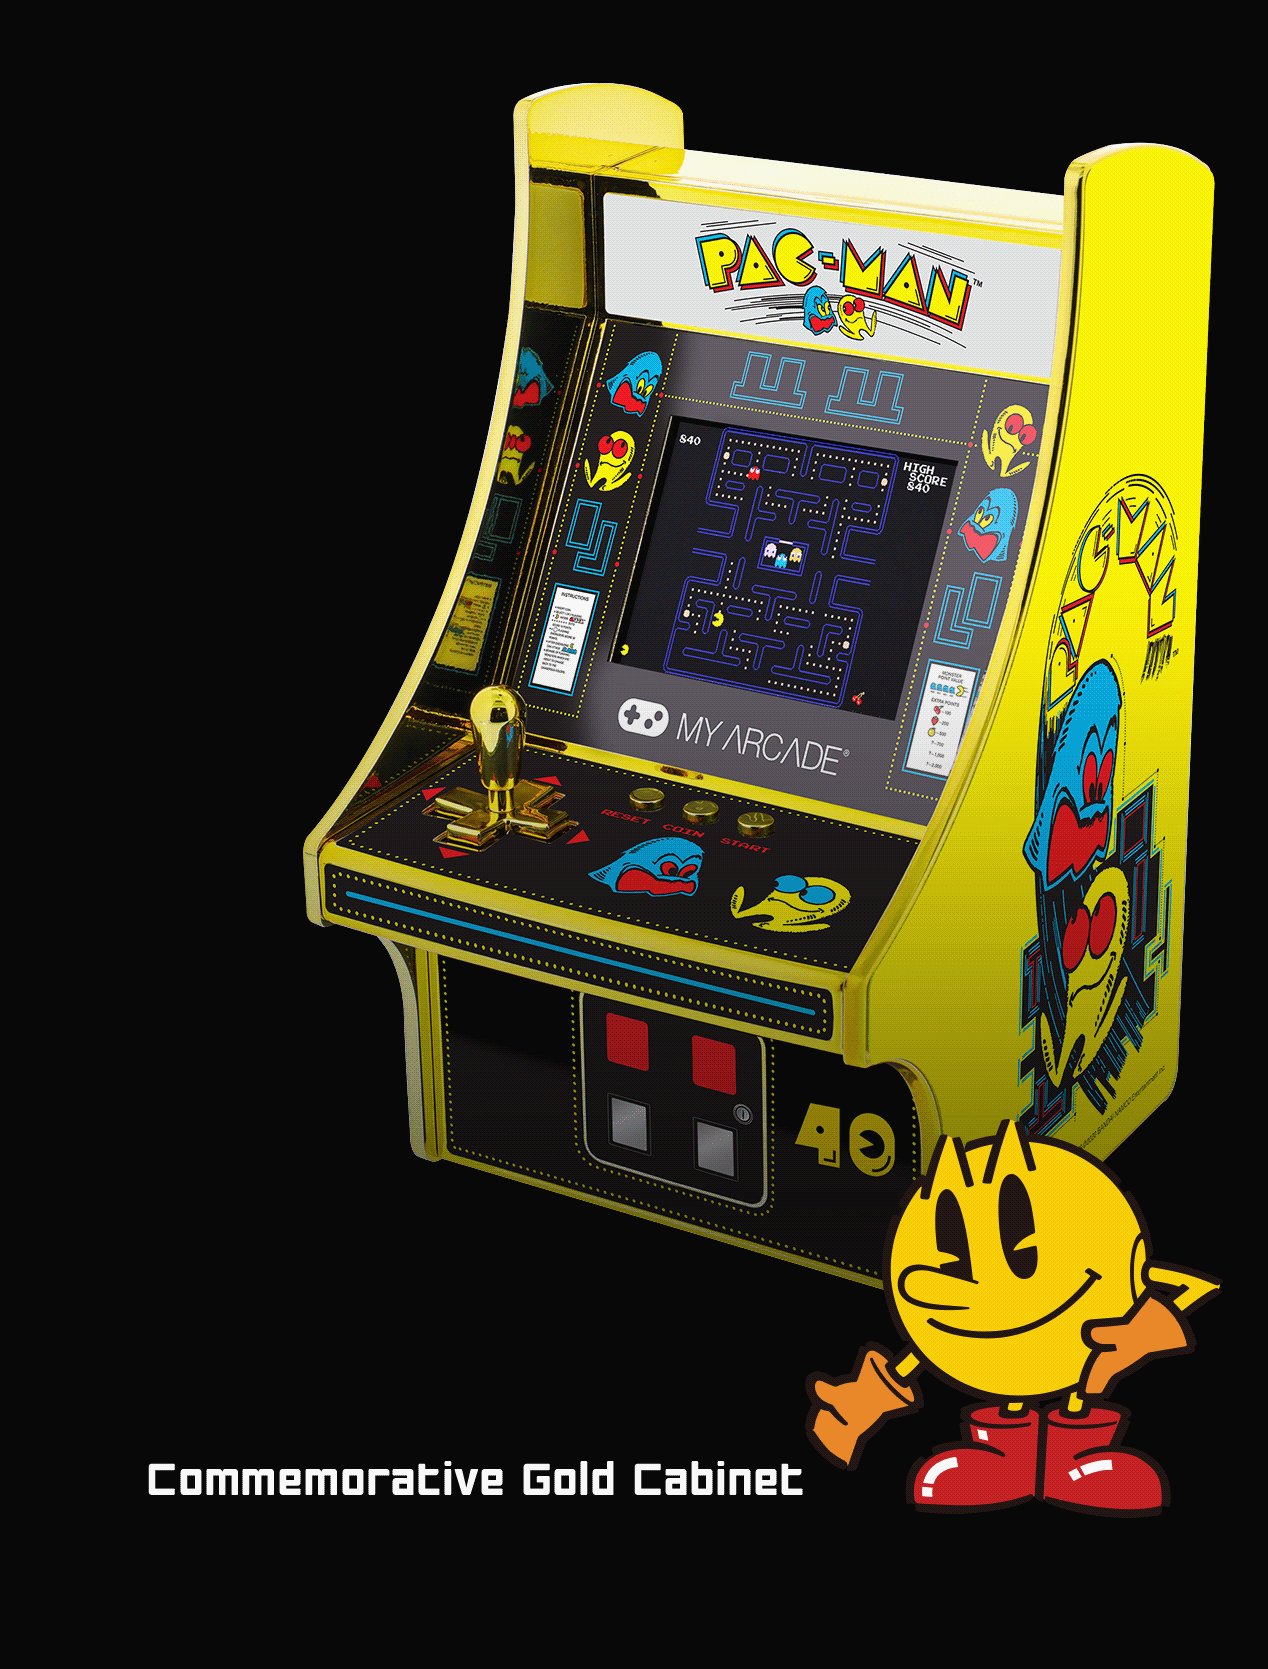 PAC-MAN mini arcade 40th Anniversary